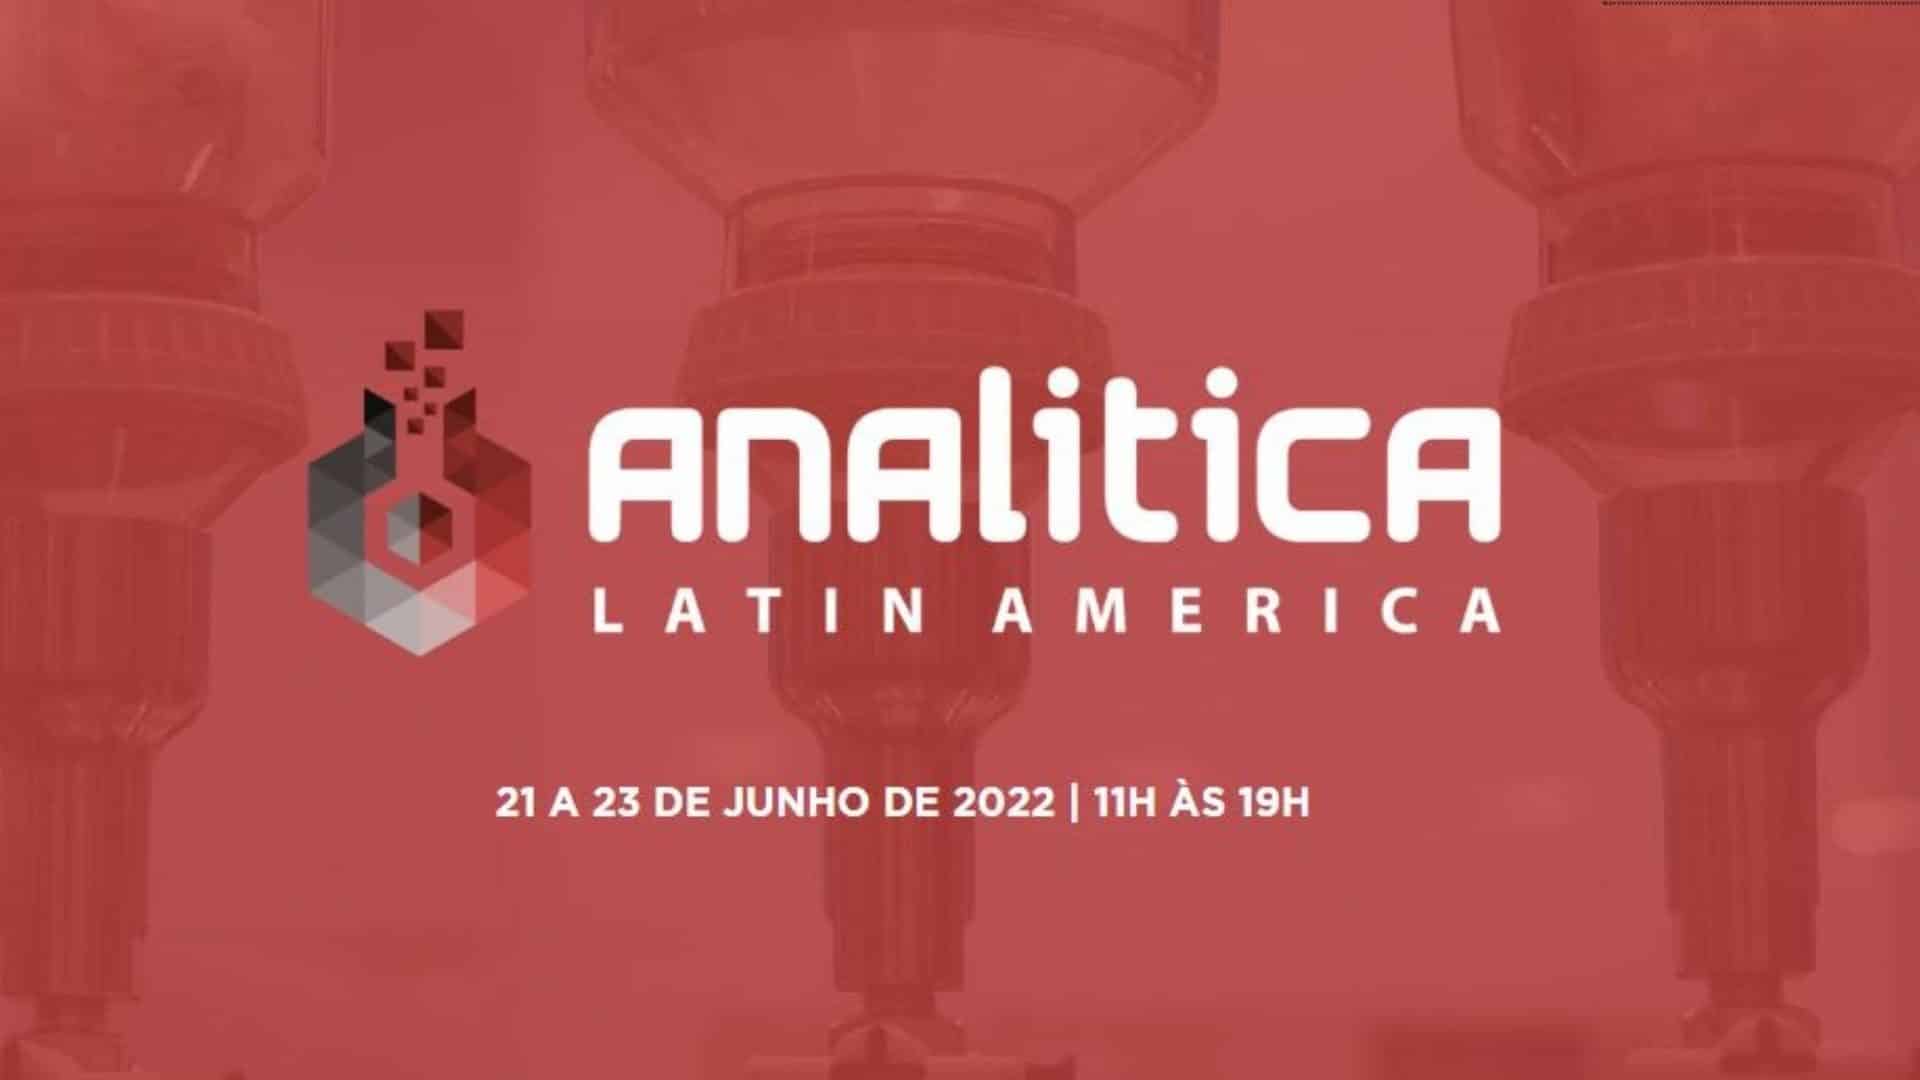 Analitica Latin America